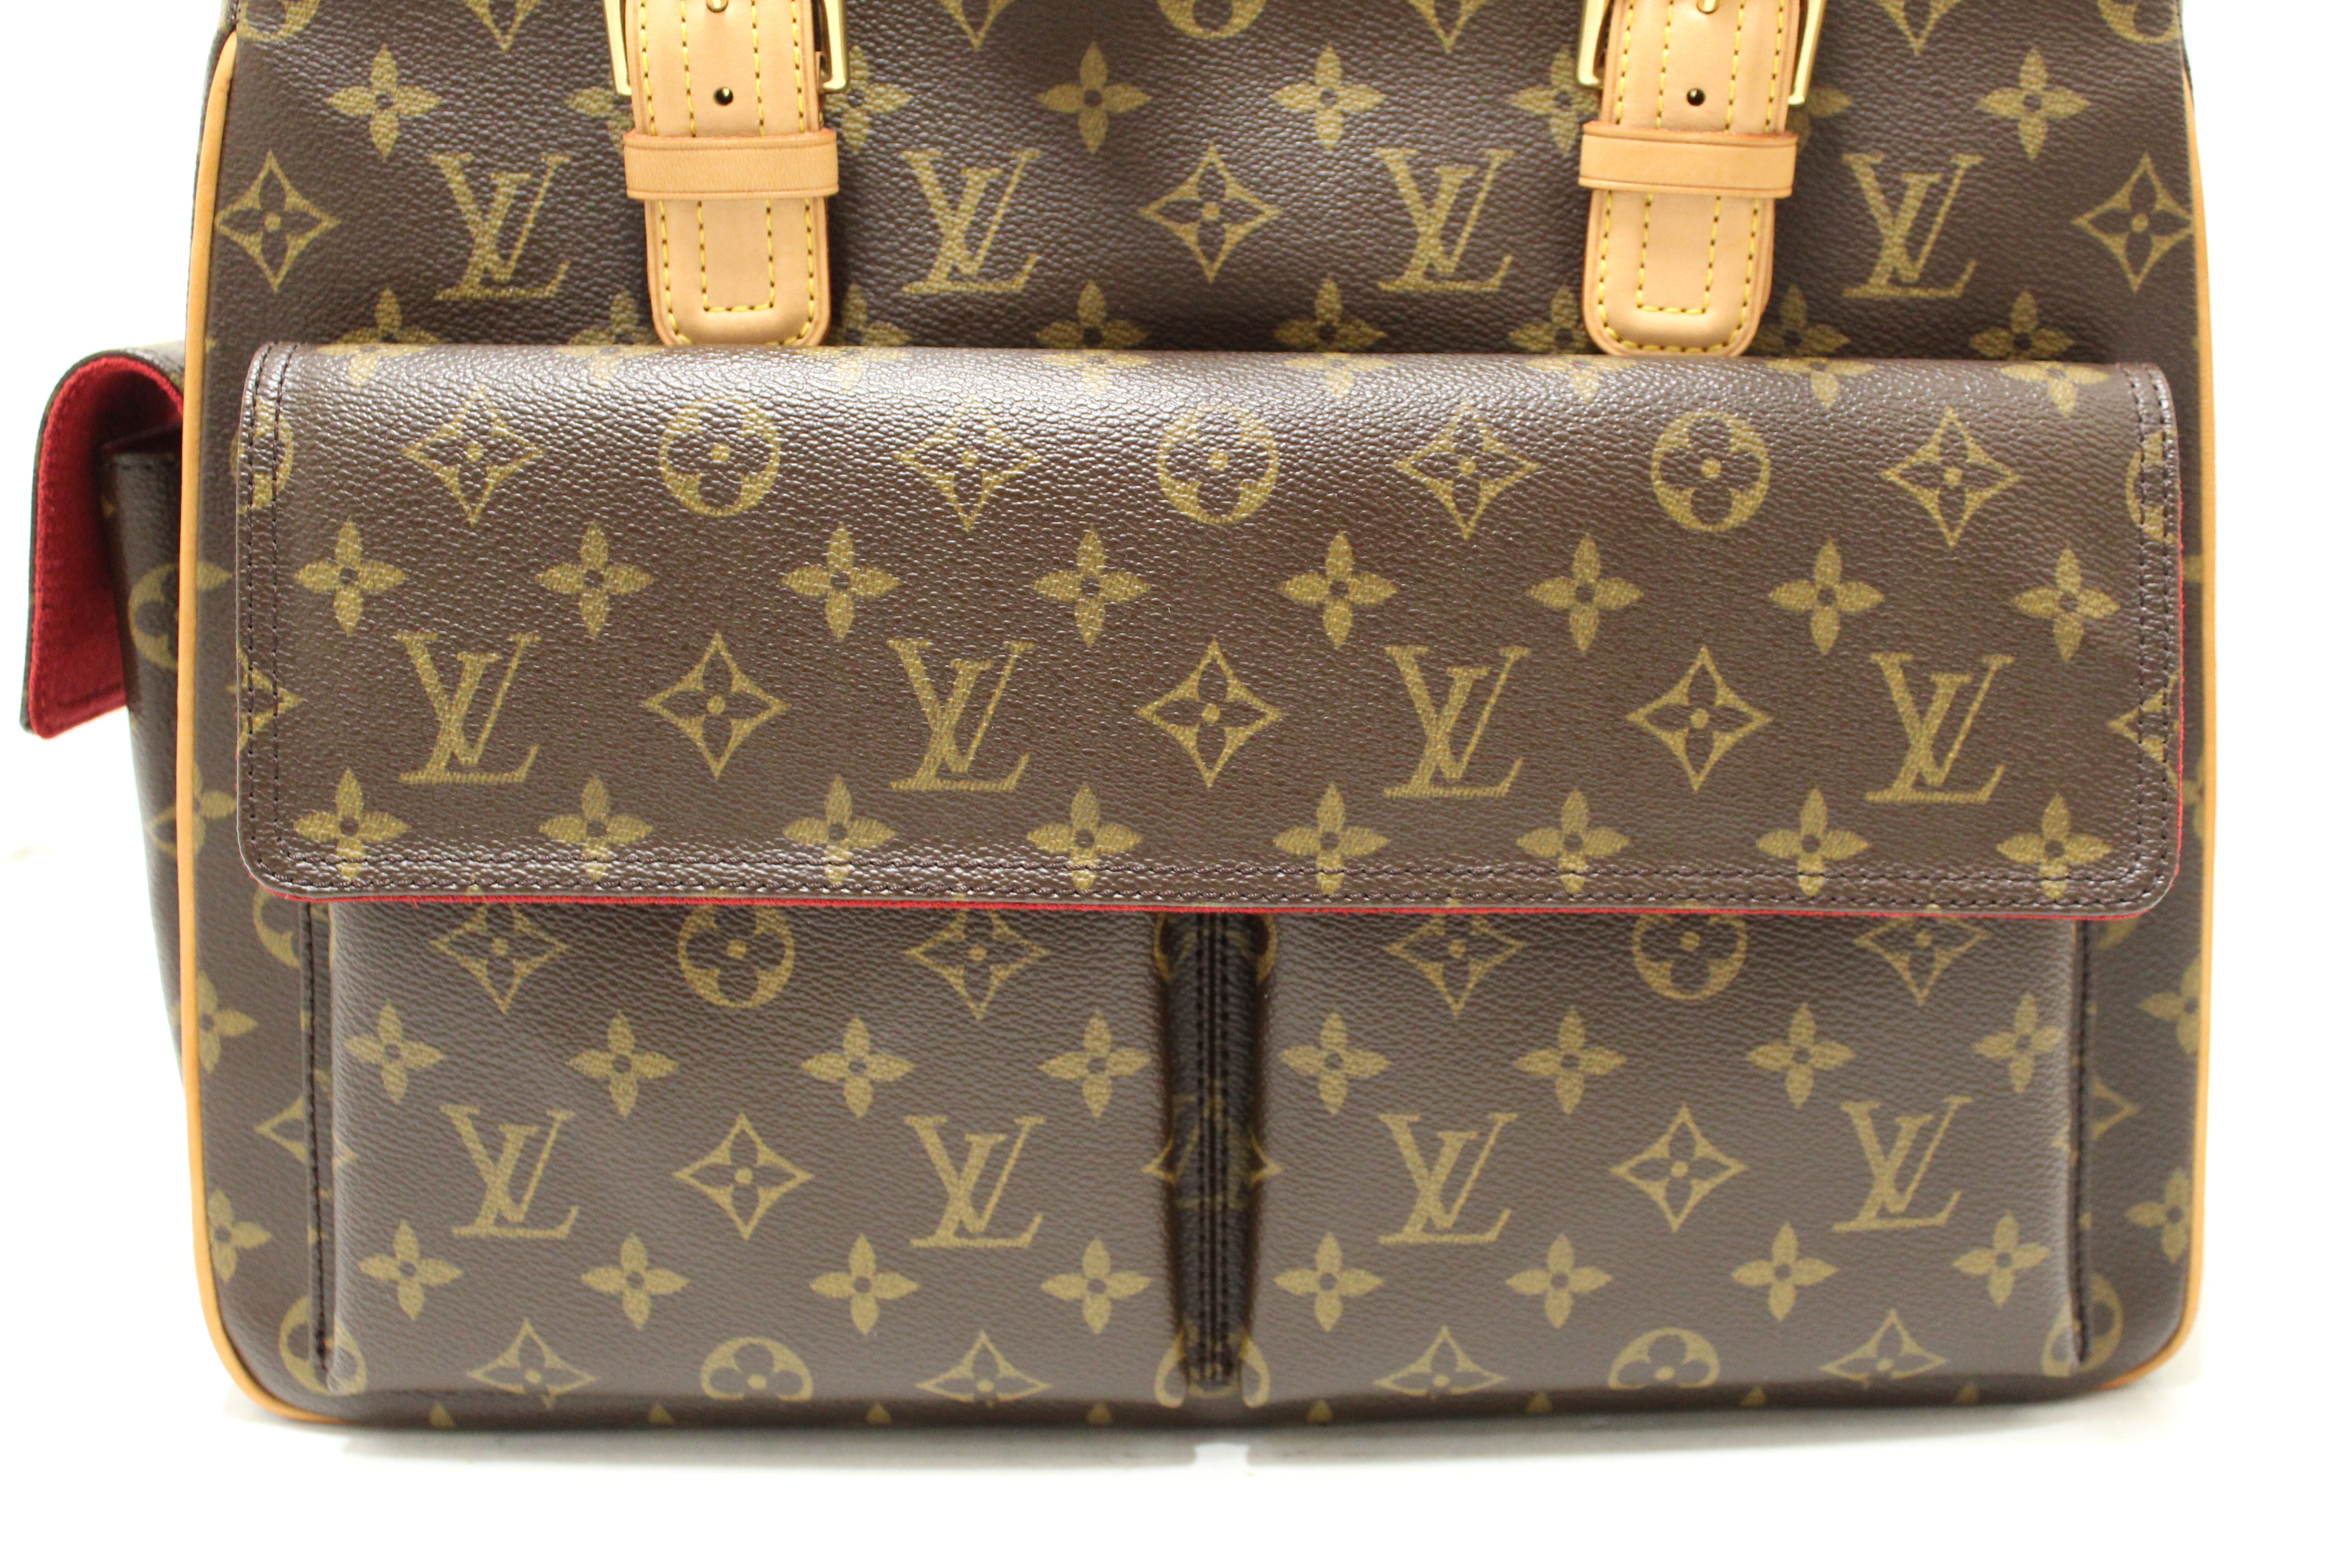 Auth Louis Vuitton Monogram Multipli Cite M51162 Women's Handbag